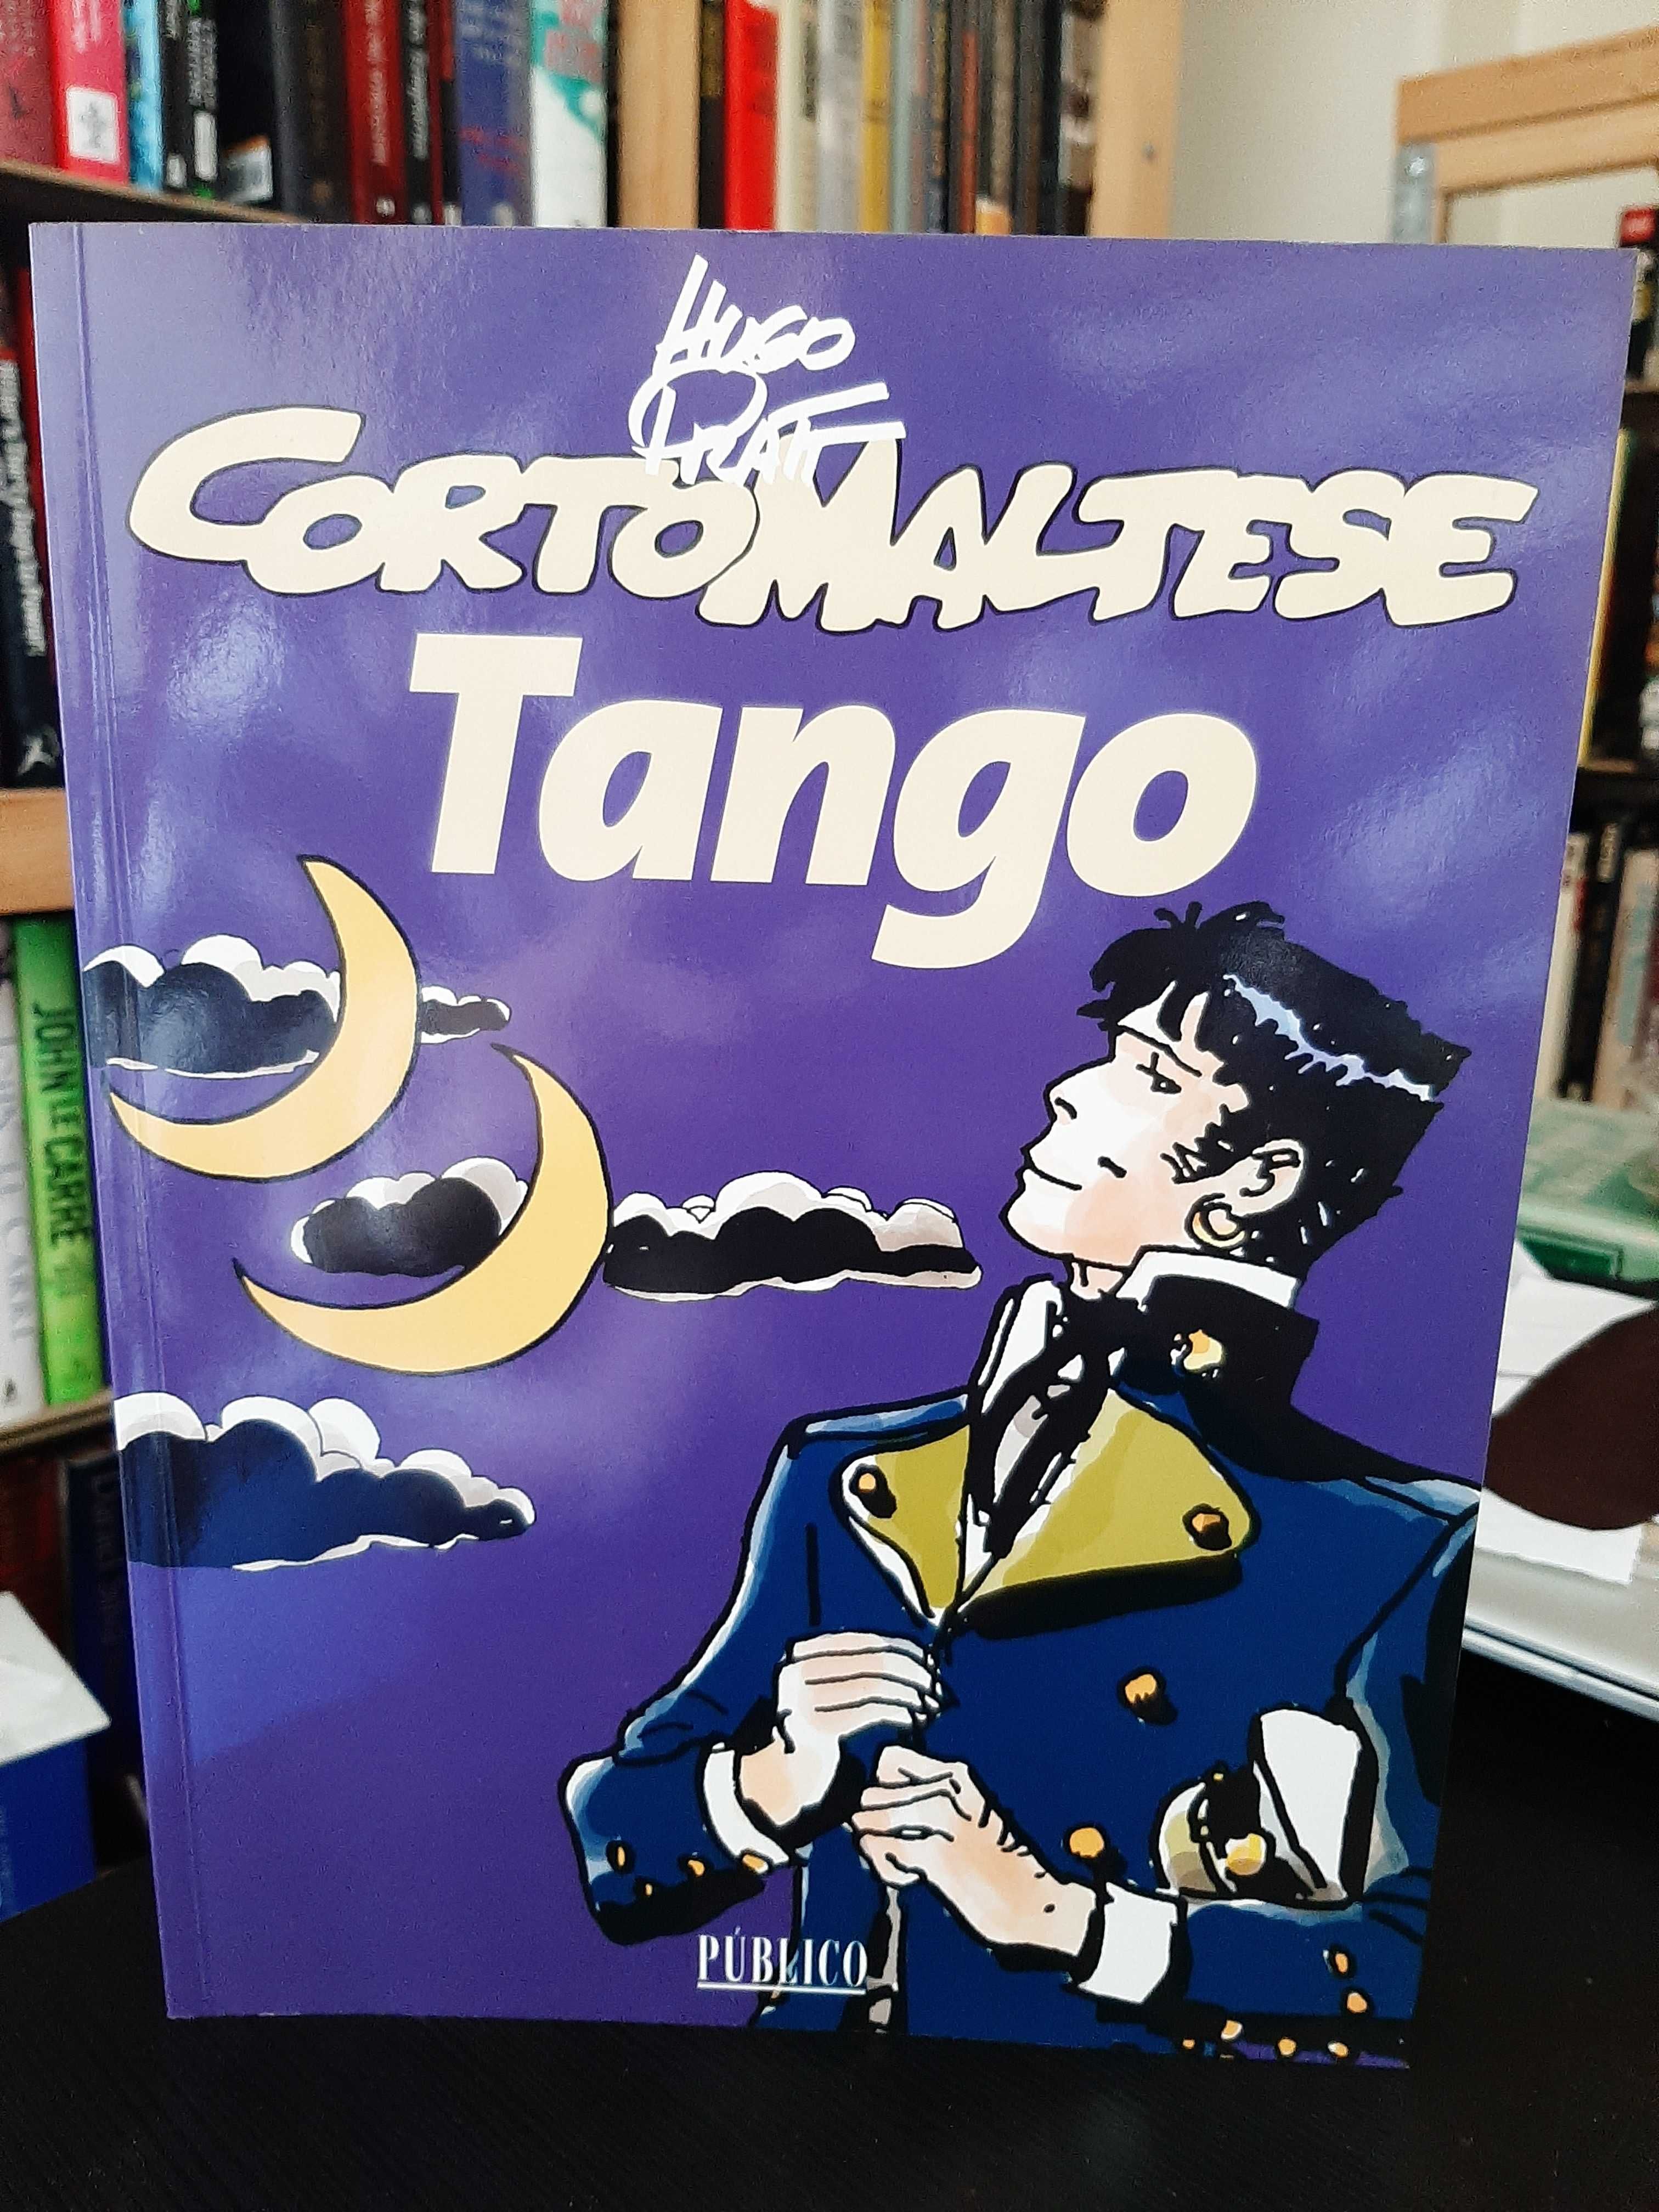 Hugo Pratt – Corto Maltese: Tango